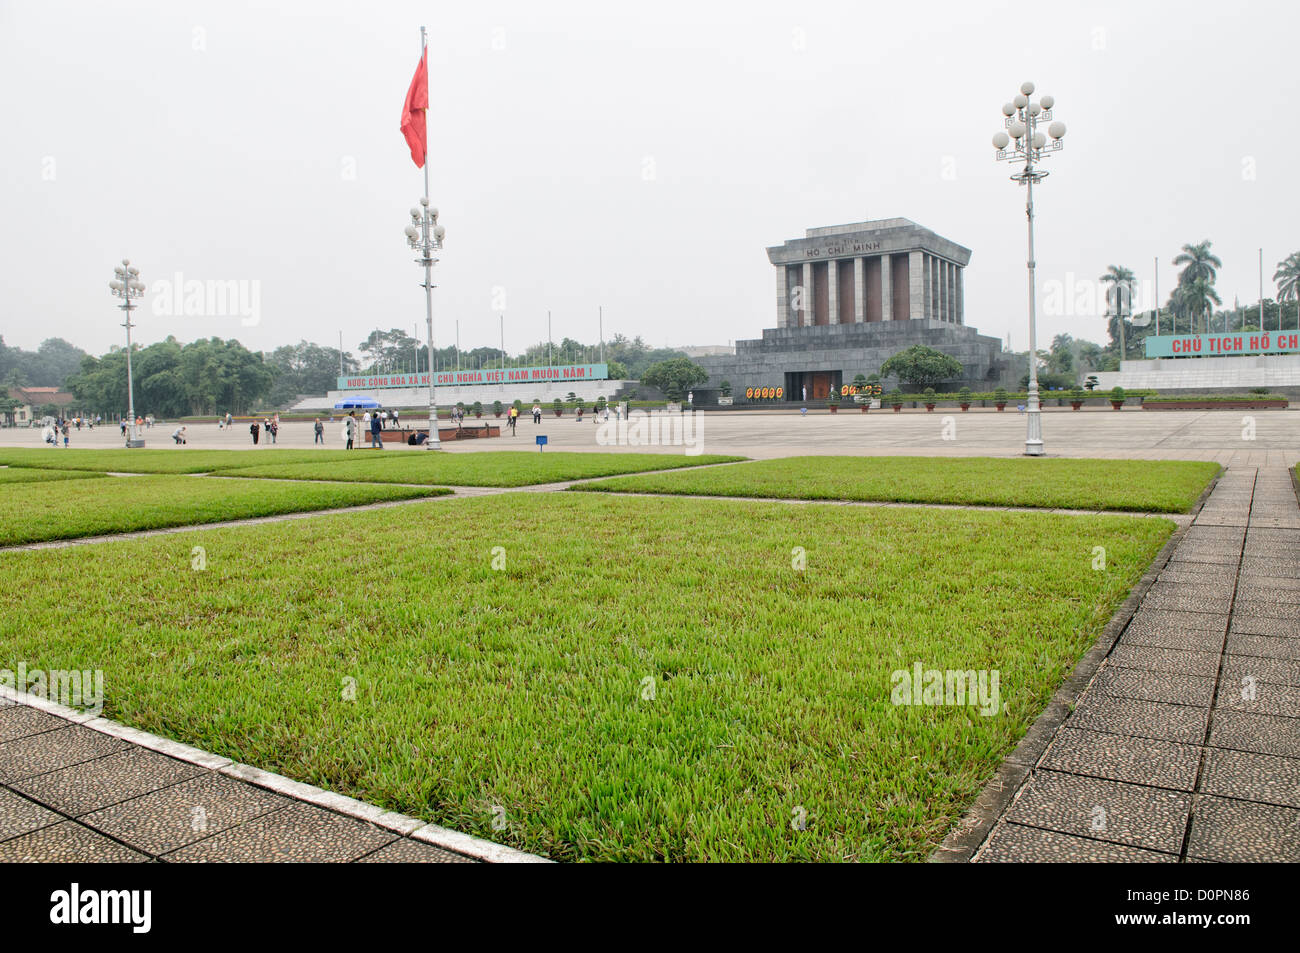 HANOI, Vietnam - graminées dans la grande place Ba Dinh en face de la mausolée de Ho Chi Minh. Un grand monument en centre-ville de Hanoi entouré par place Ba Dinh, le mausolée de Ho Chi Minh abrite le corps embaumé de l'ancien président fondateur et leader vietnamien Ho Chi Minh. Banque D'Images